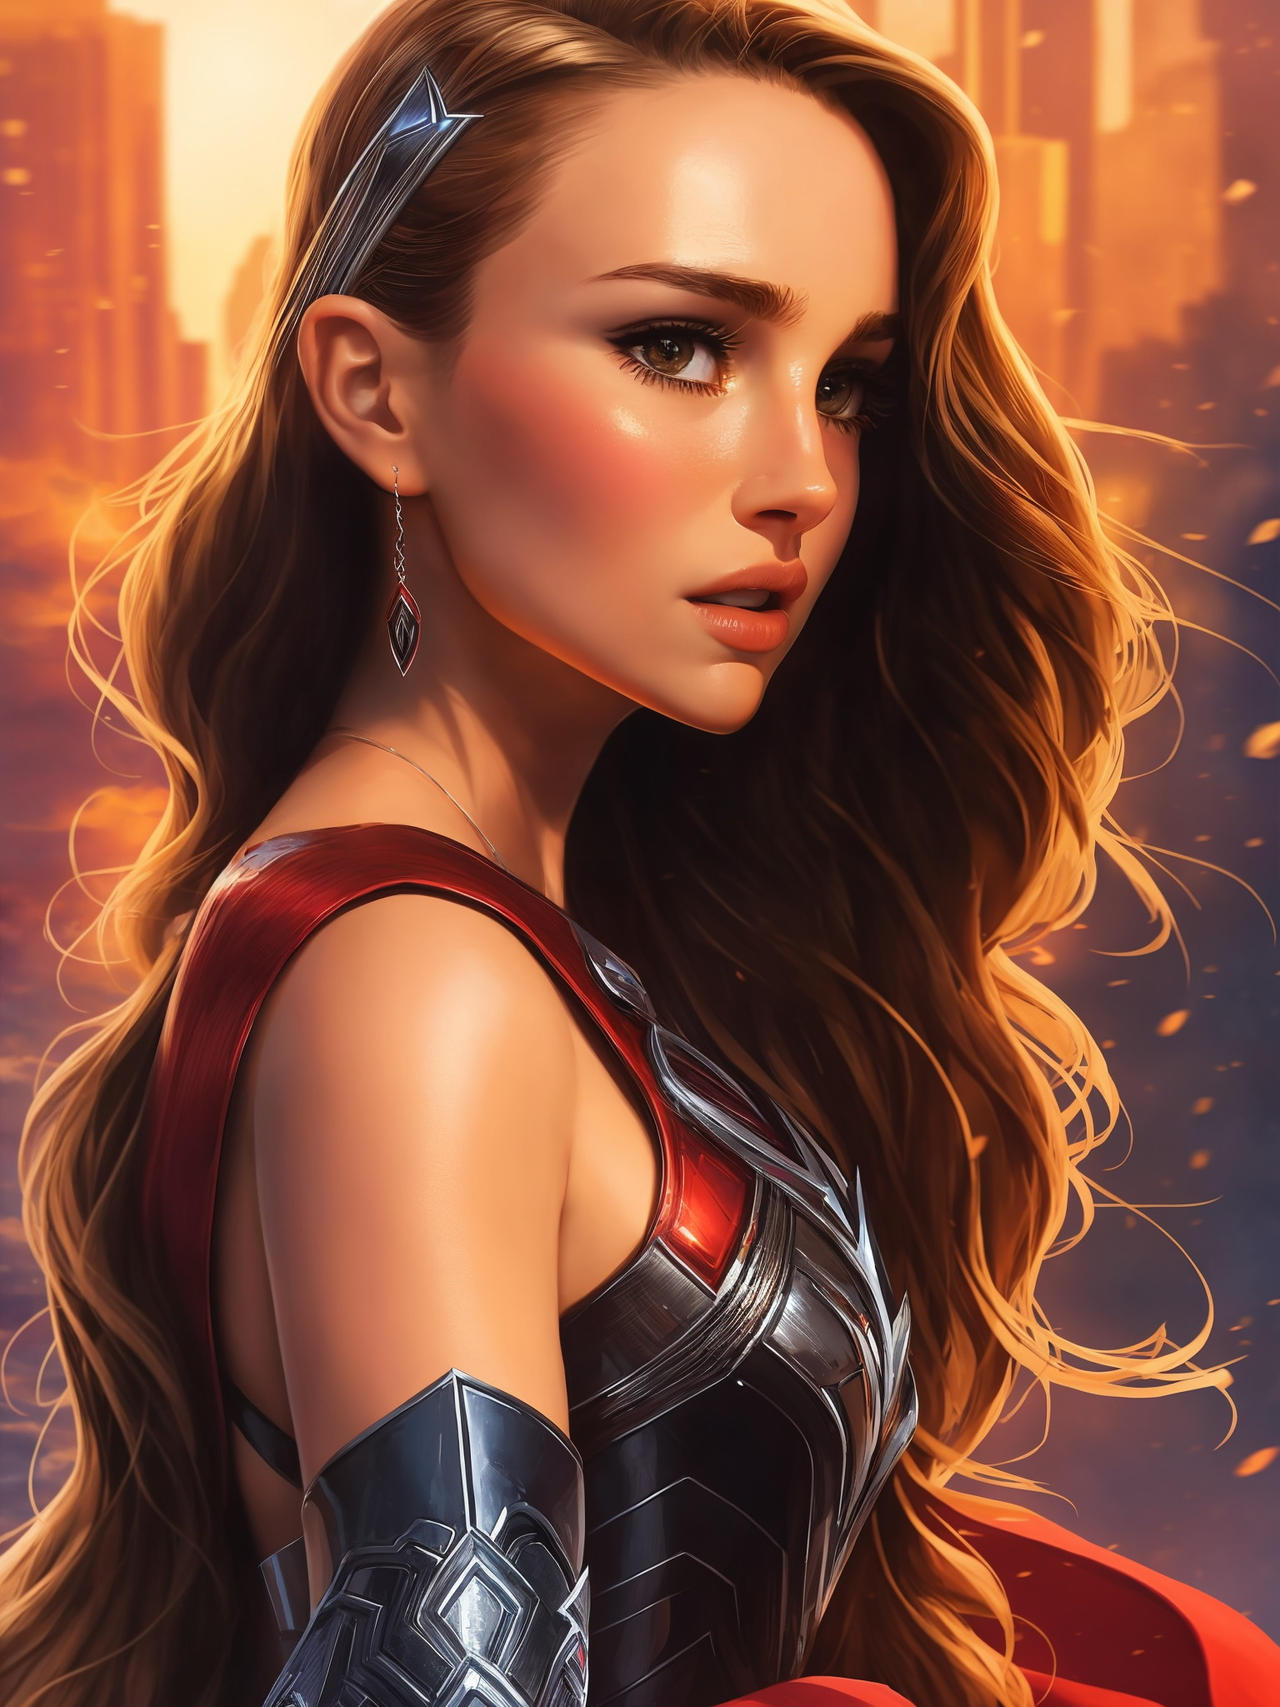 Carta Fan-made de Thor (Jane Foster) - Marvel Snap by JenBNO on DeviantArt